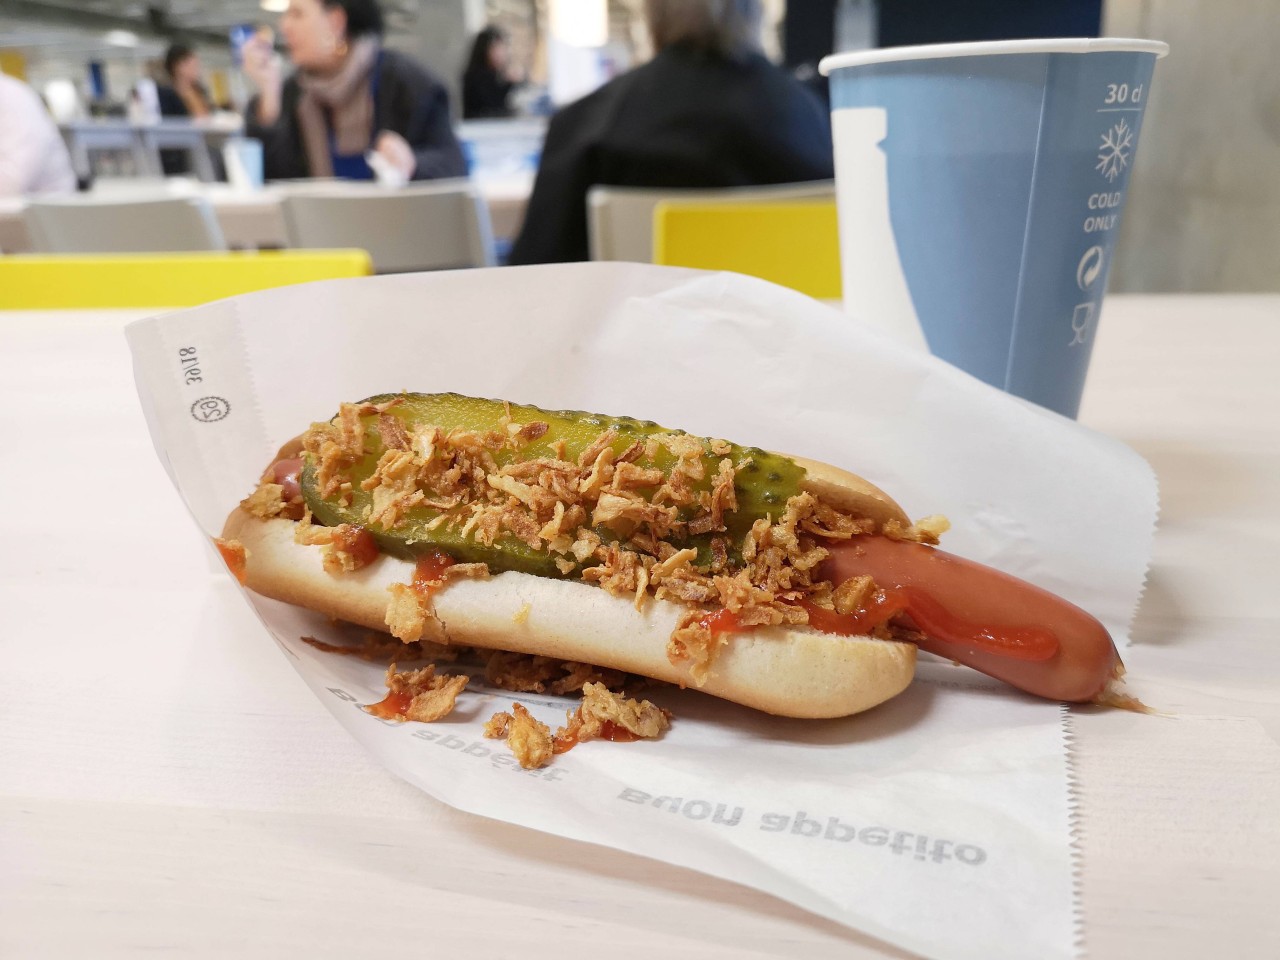 Ein Ikea-Kunde hat eine neue Idee bezüglich des Hotdog-Sortiments. (Symbolbild)